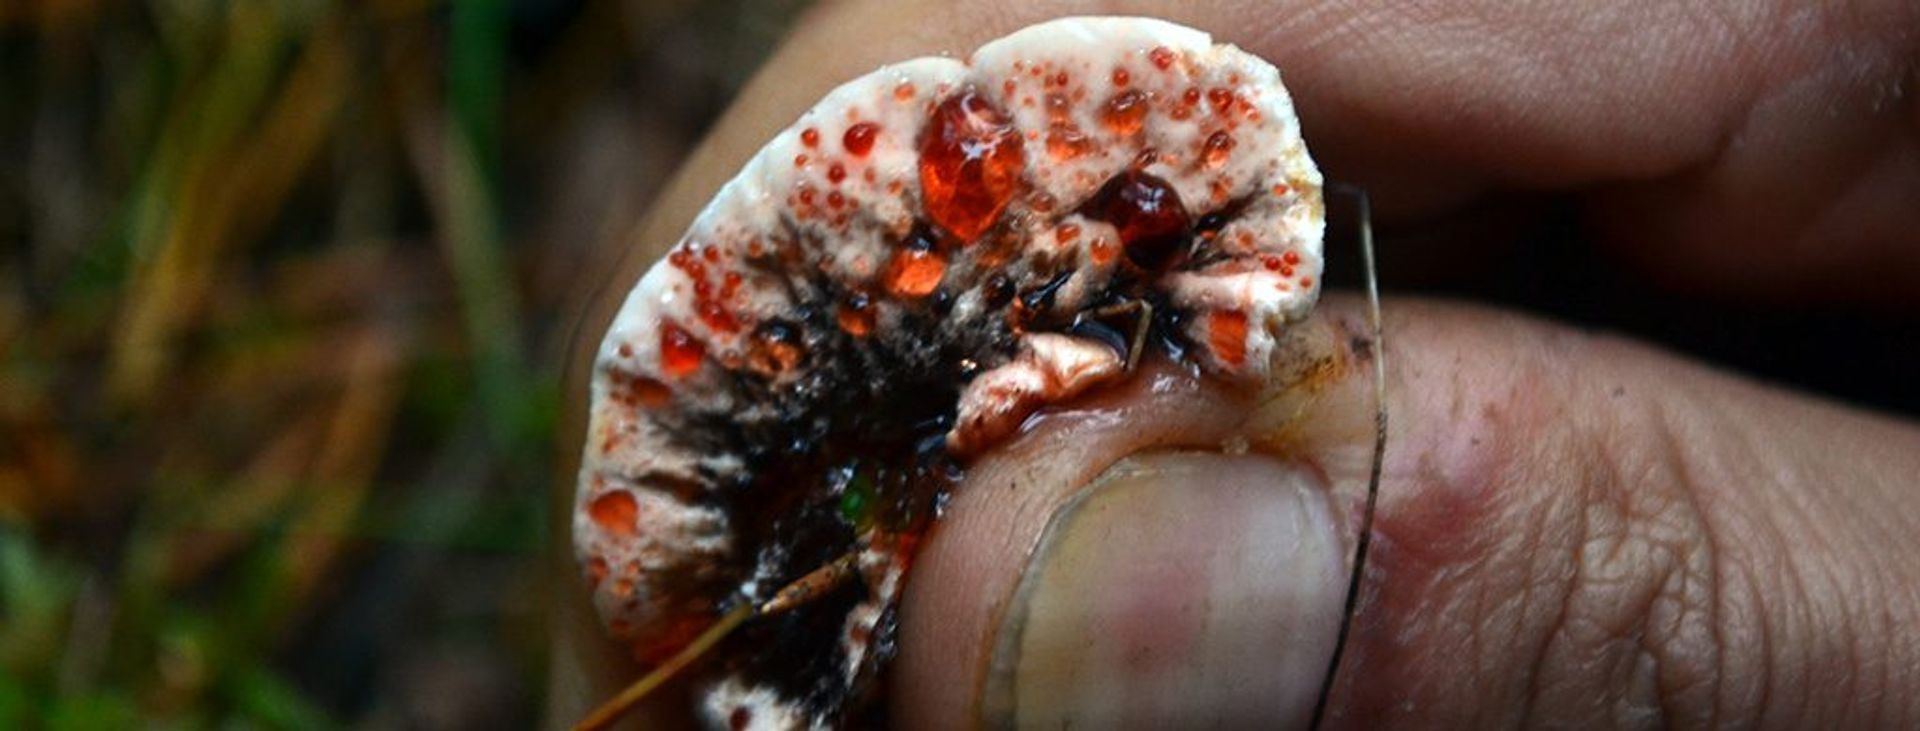 Bleeding tooth mushroom